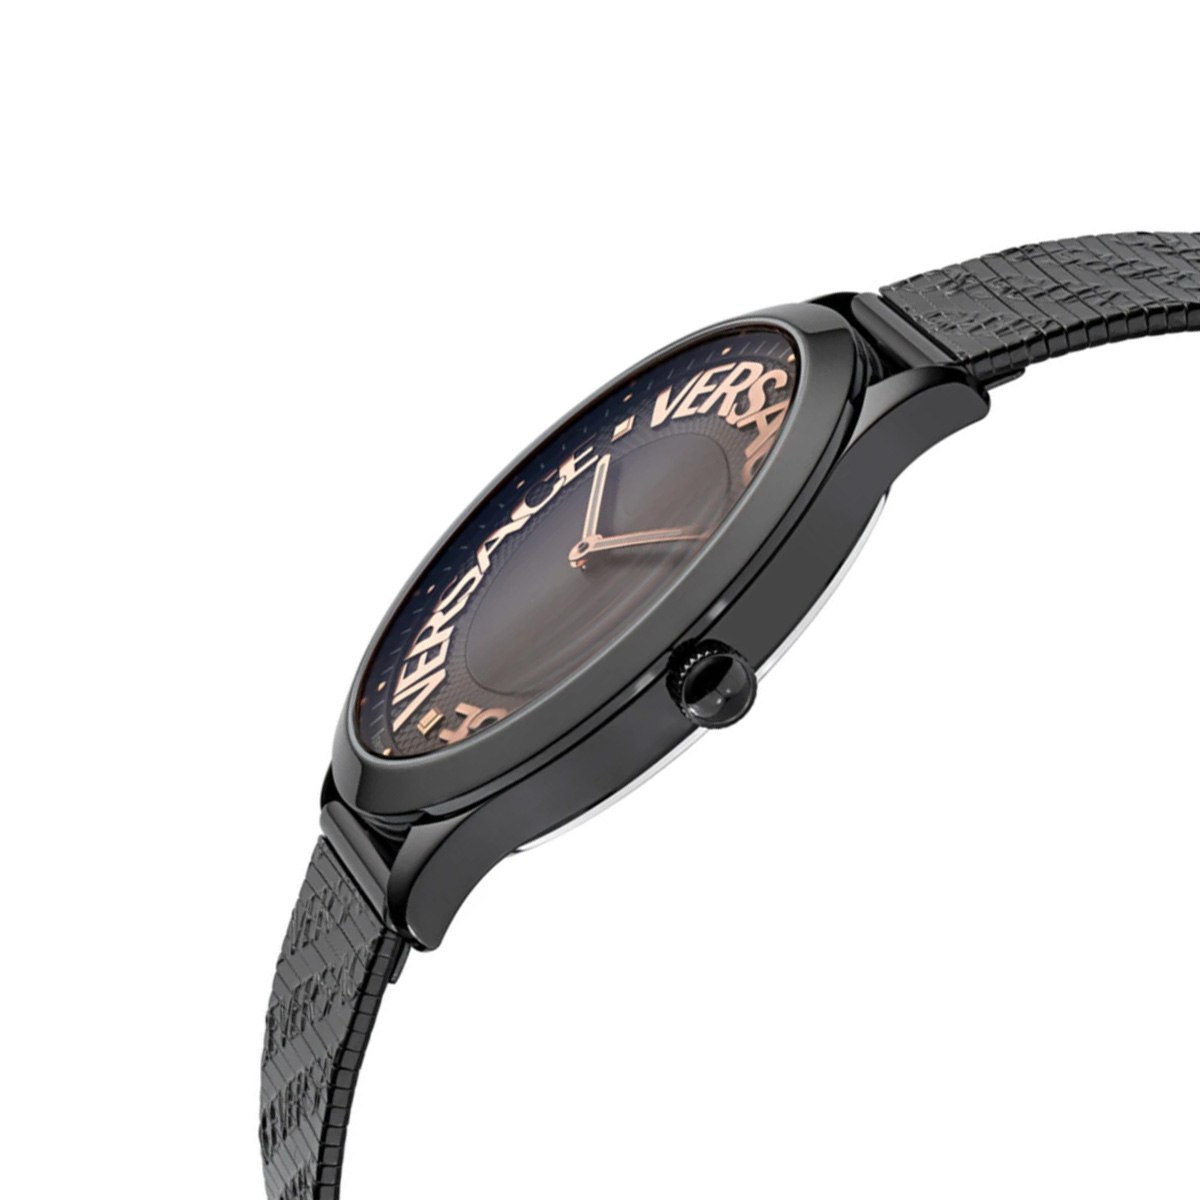 Часовник Versace VE2O00622